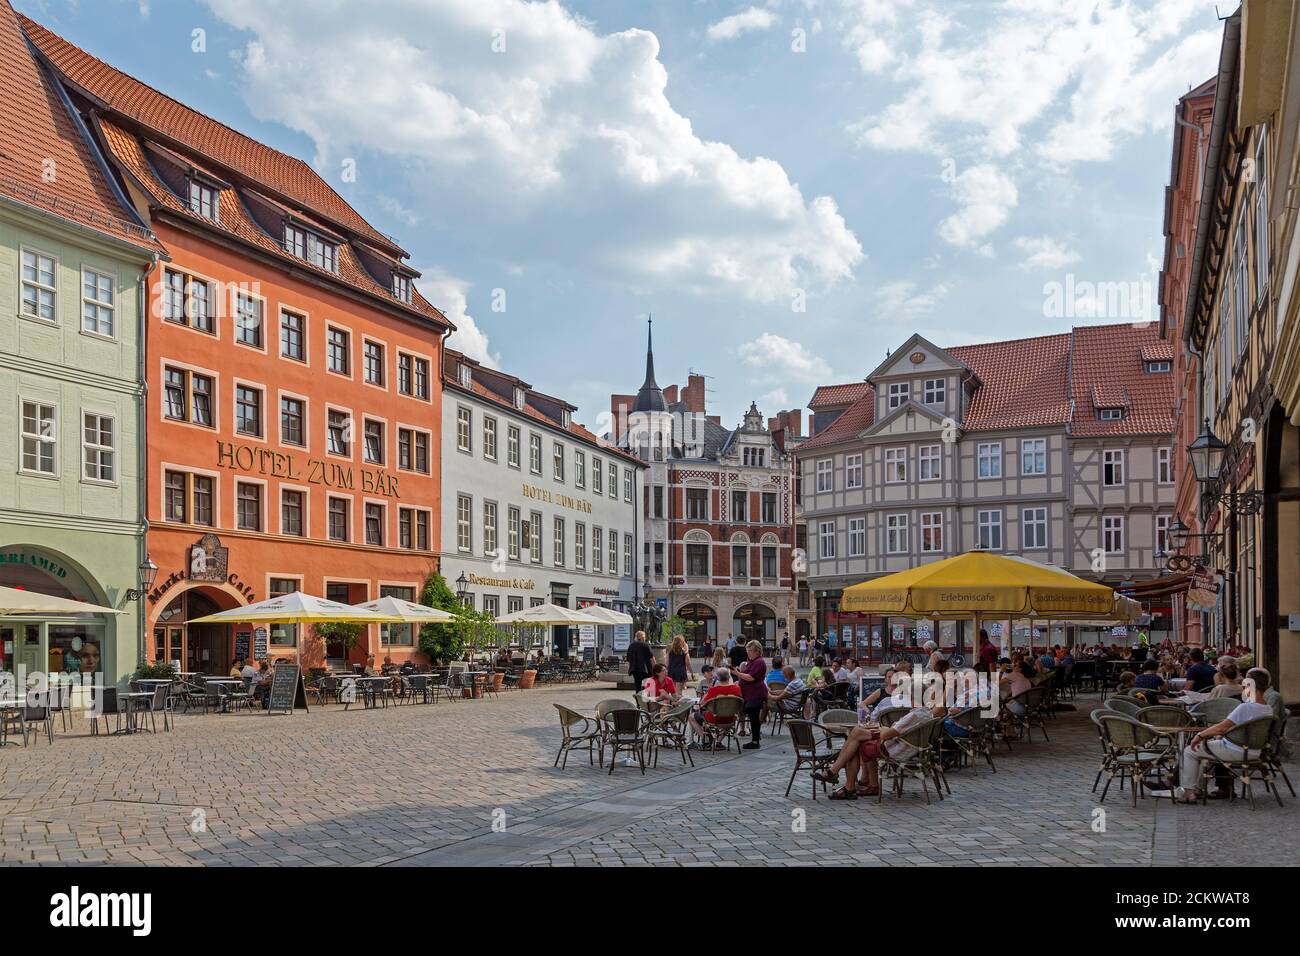 Place du marché, Quedlinburg, patrimoine culturel mondial de l'UNESCO, Saxe Anhalt, Allemagne Banque D'Images